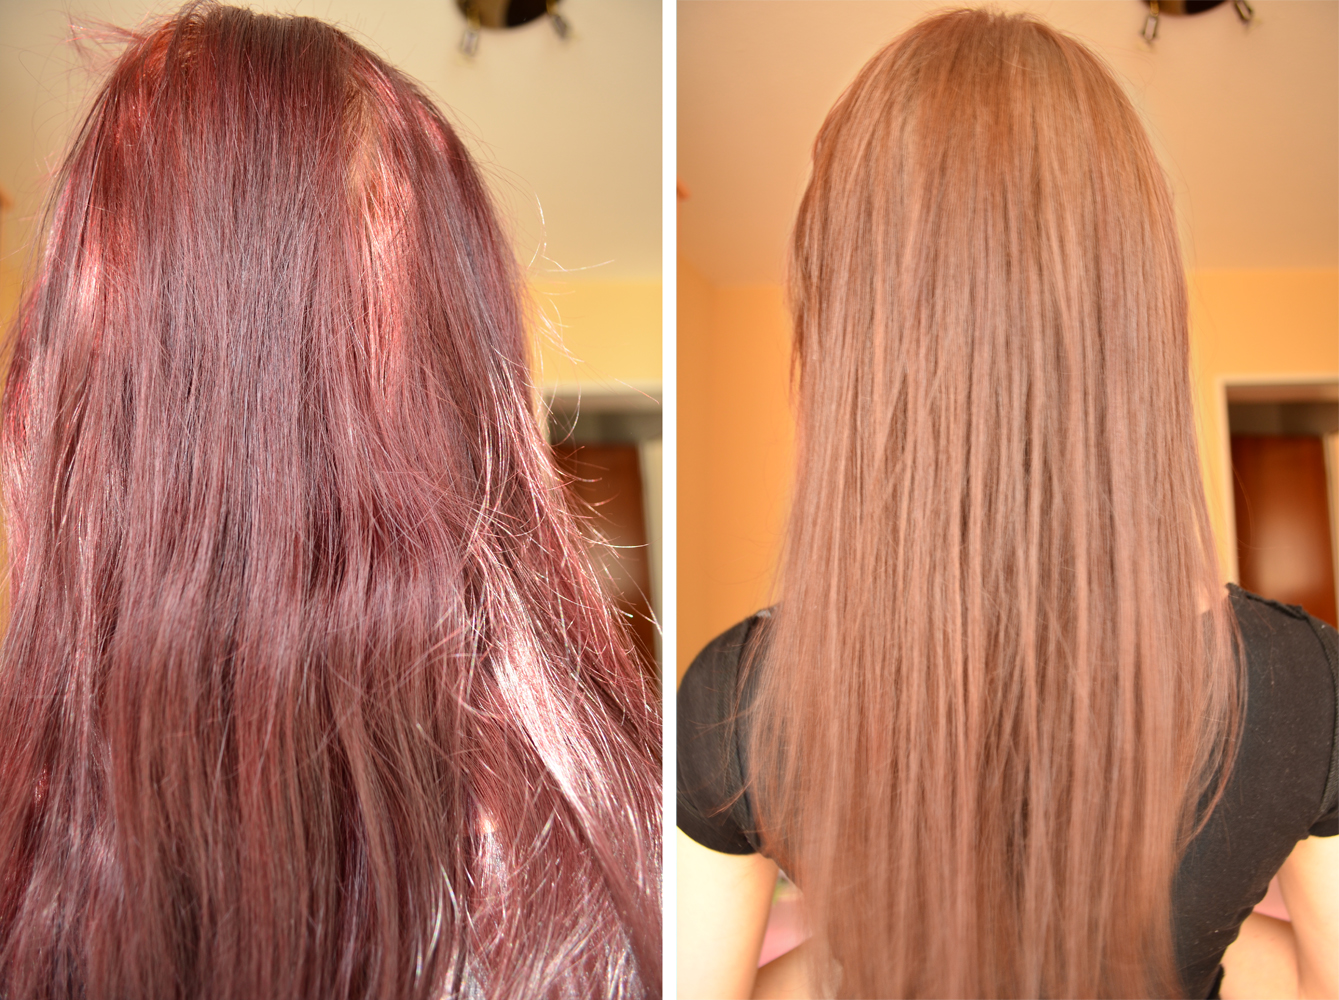 Краска восстанавливает волосы. Волосы после смывки. Смывка красного цвета с волос. Красный цвет волос после смывки. Волосы после смывки до и после.